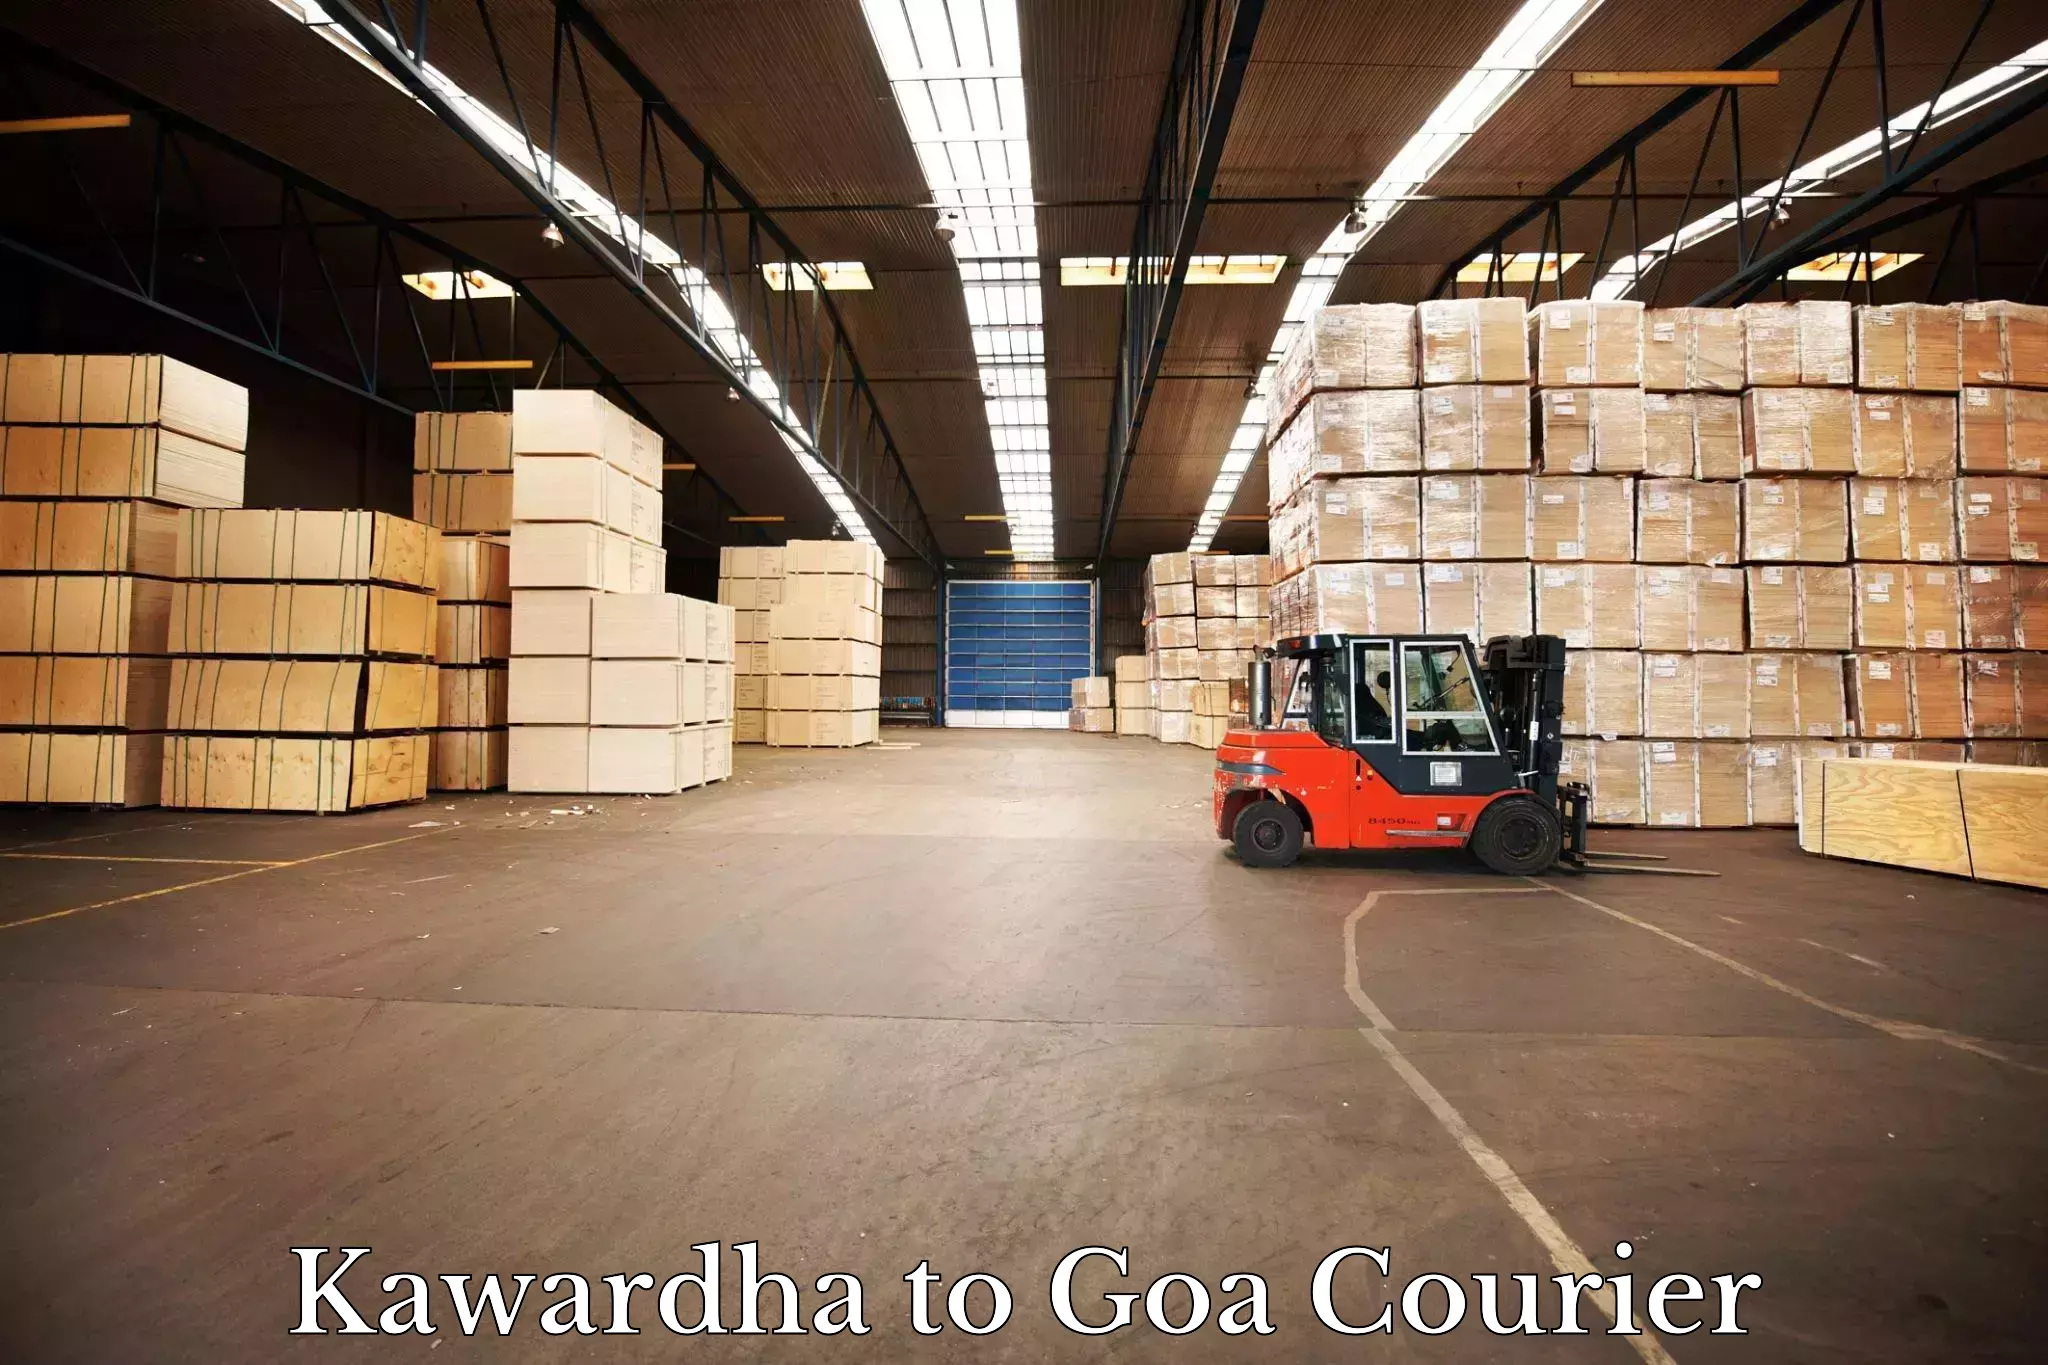 On-demand shipping options Kawardha to Ponda